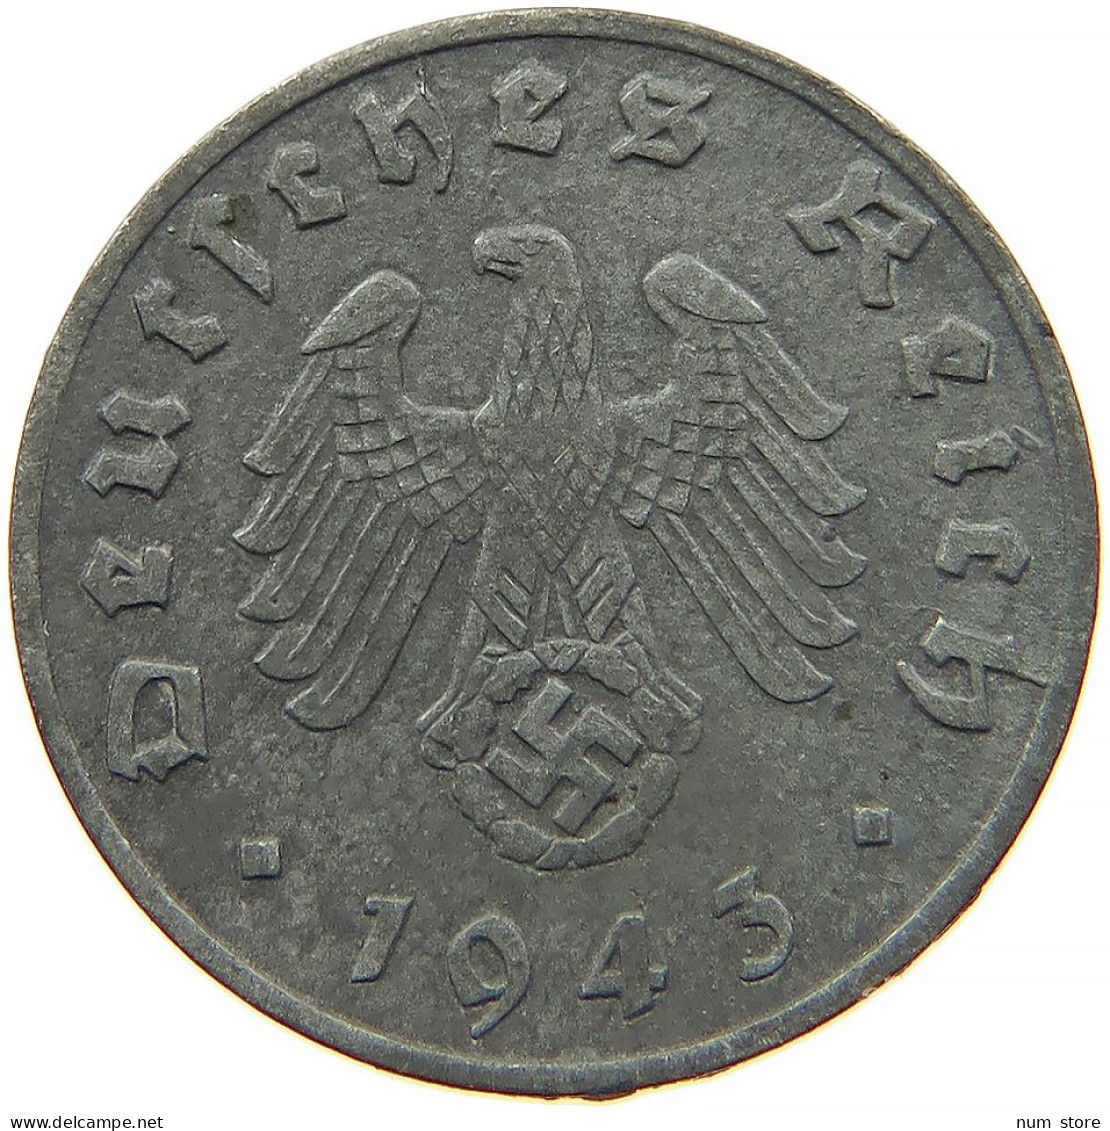 GERMANY 1 REICHSPFENNIG 1943 G #s091 1127 - 1 Reichspfennig